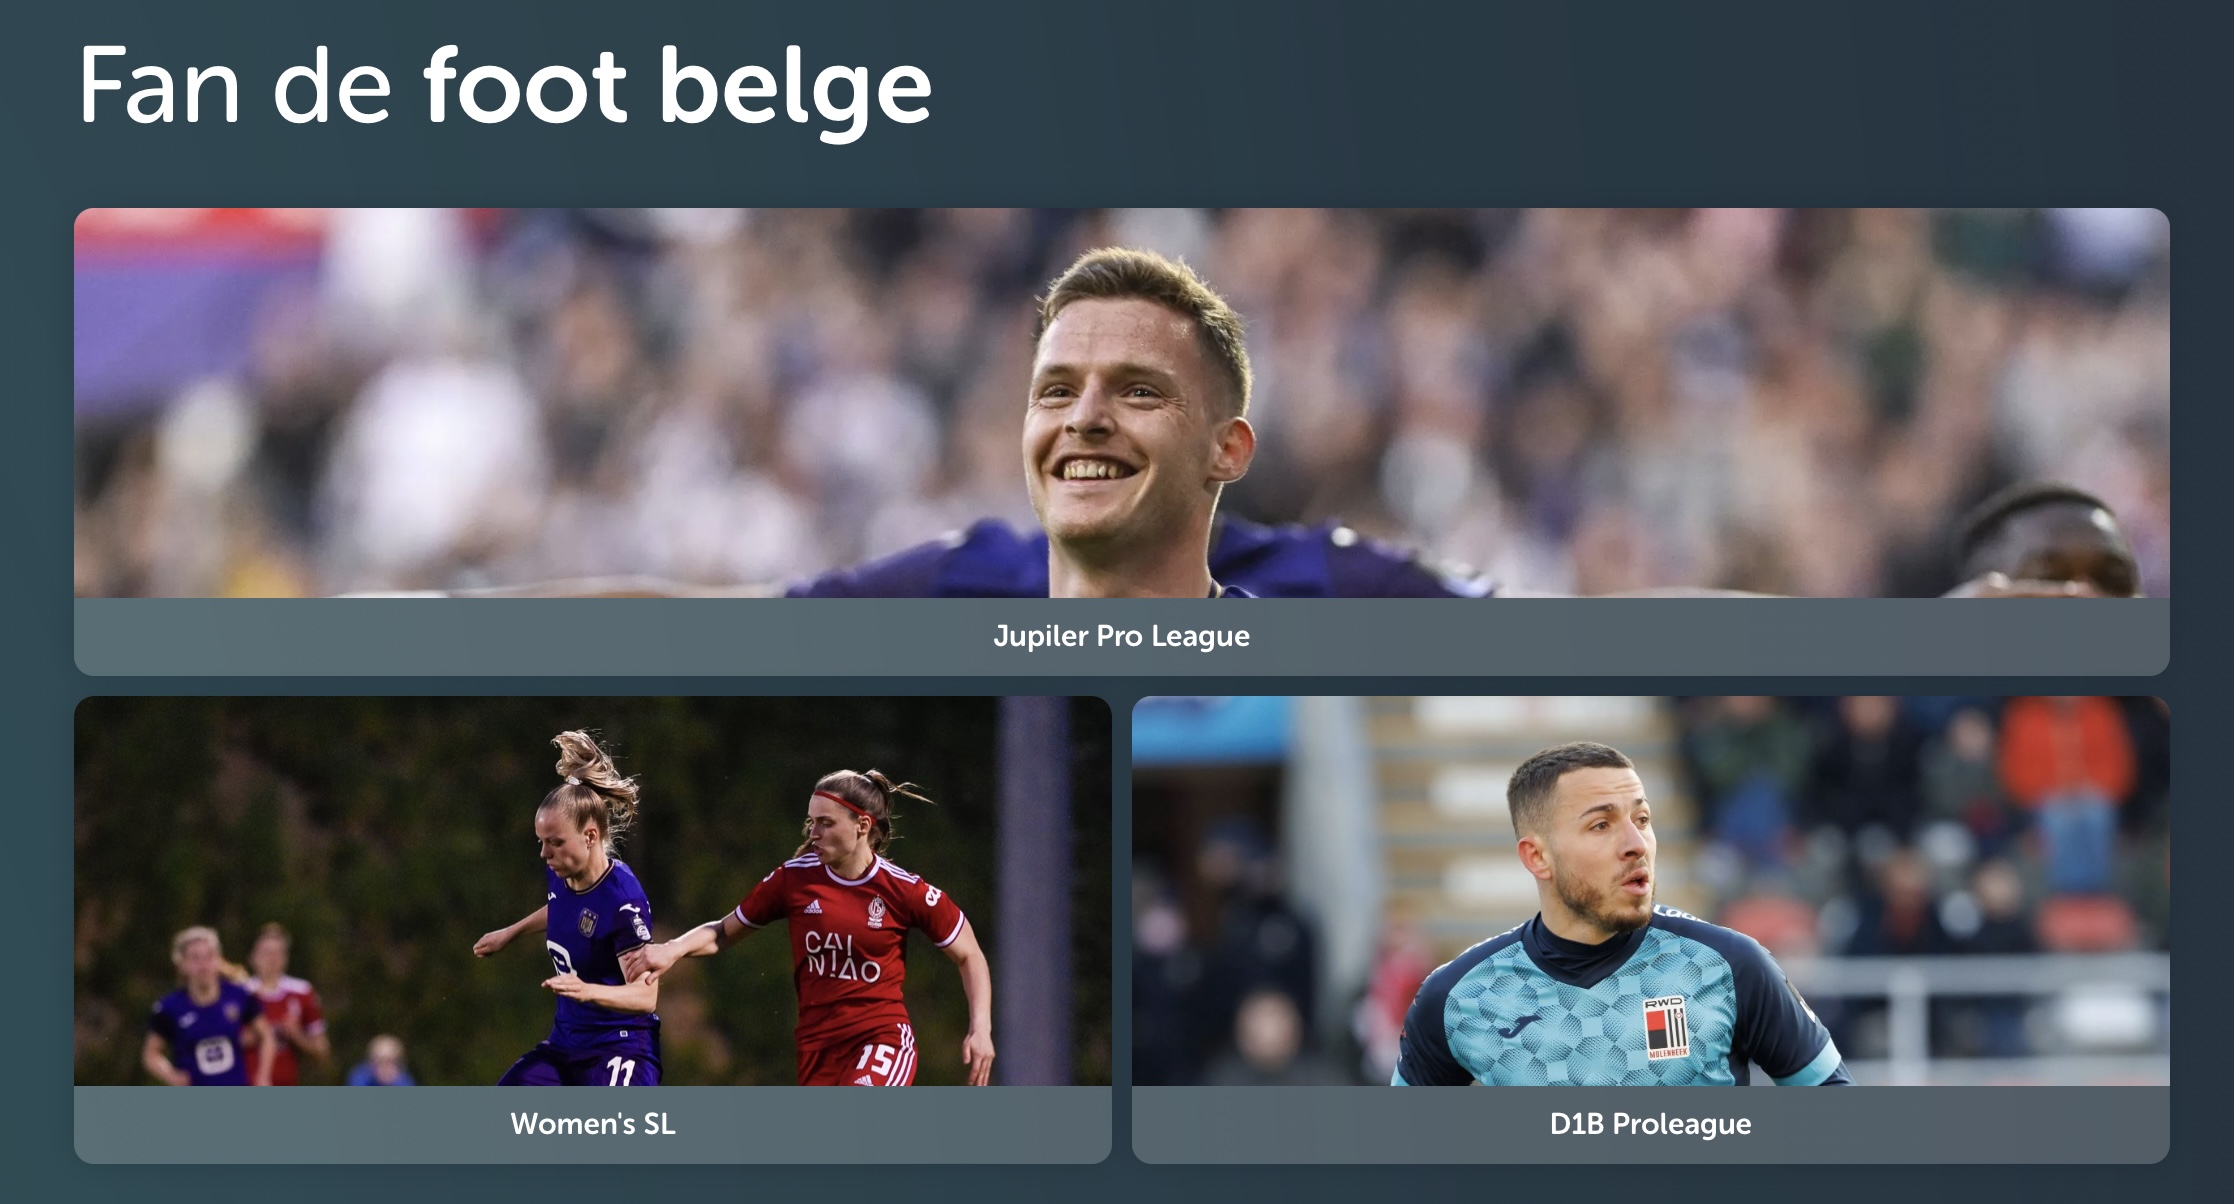 Les chaînes TV pour que les indépendants regardent le foot belge